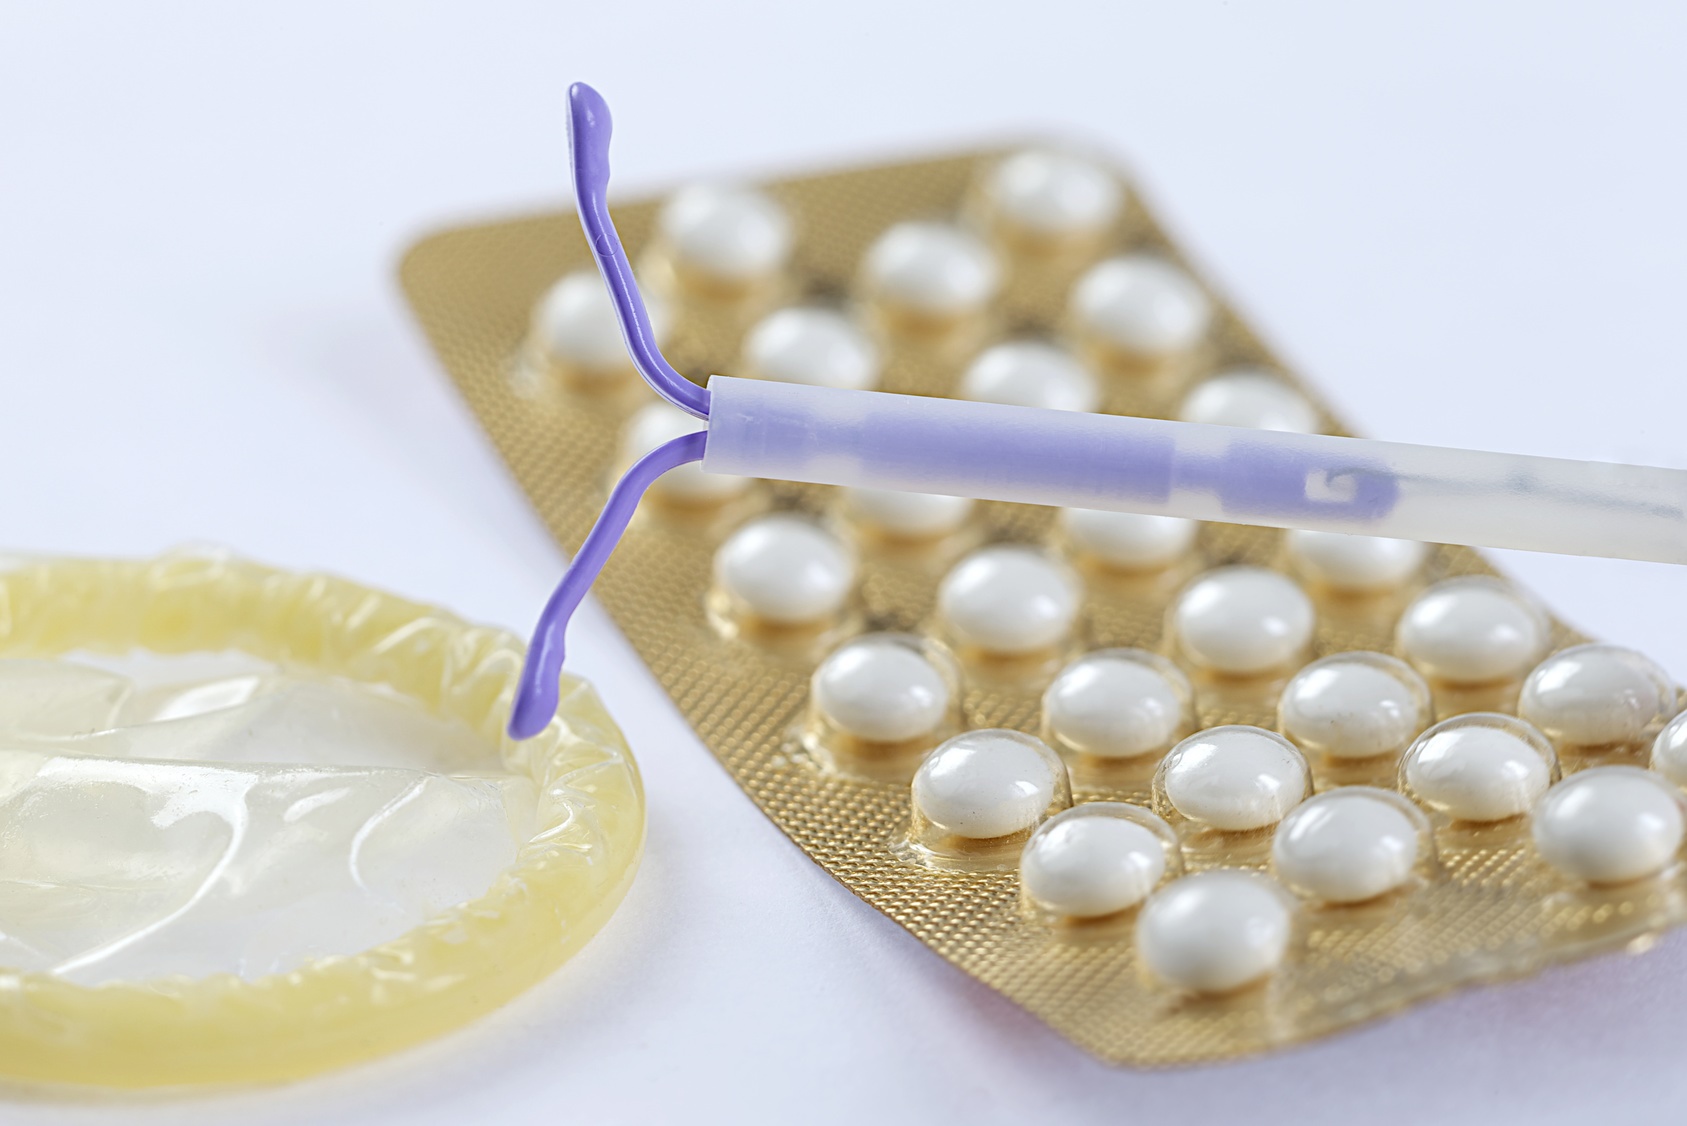 Le stérilet, également appelé dispositif intra-utérin, serait le contraceptif le plus efficace.&nbsp; © JPC-PROD